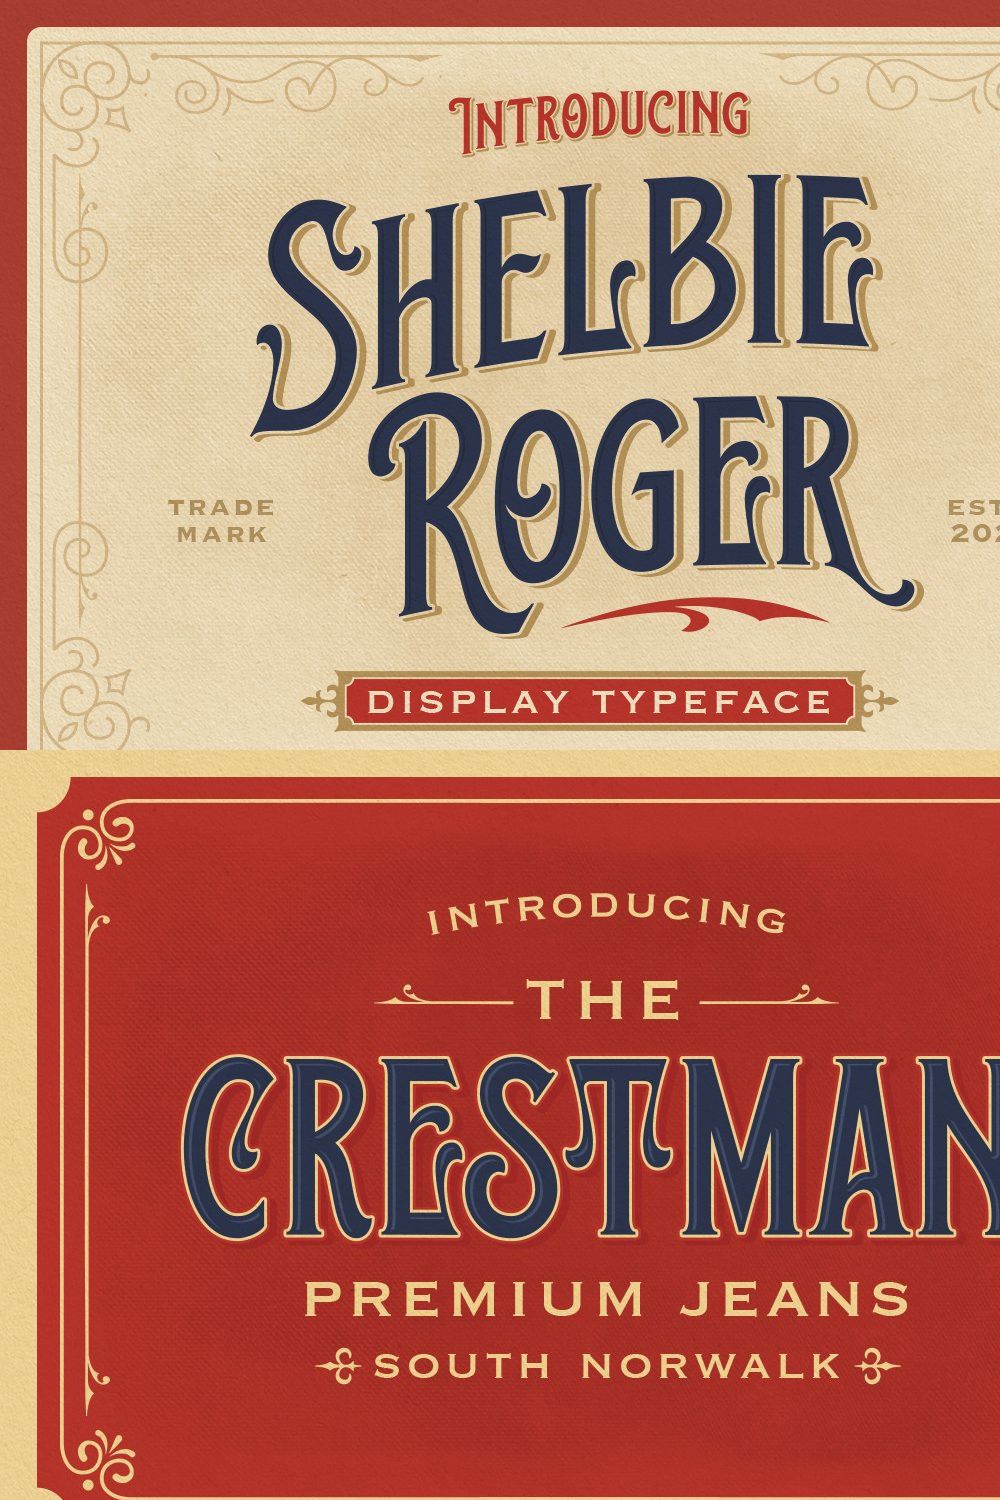 Shelbie Roger - Vintage Display Font pinterest preview image.